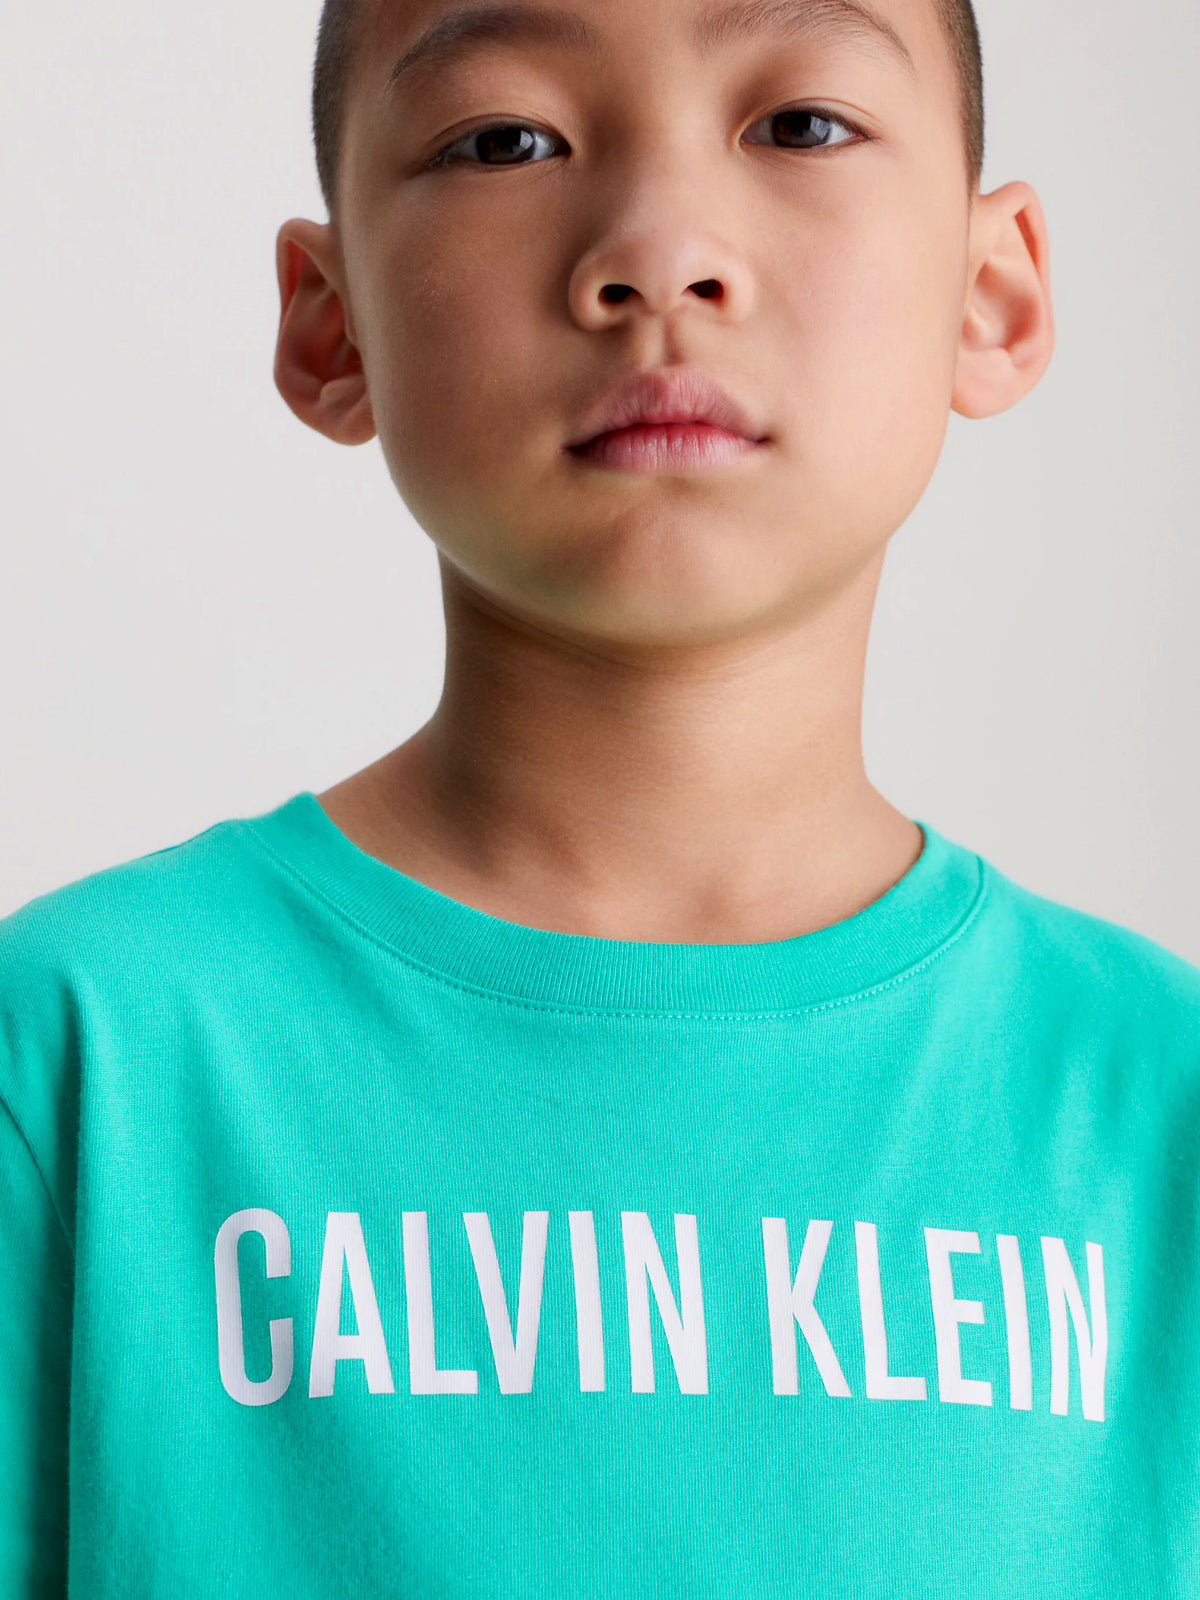 Calvin Klein Boys Intense Power T-Shirt - 2 Pack, 06, B70B700431, Lightteal/ W/ Boldblue